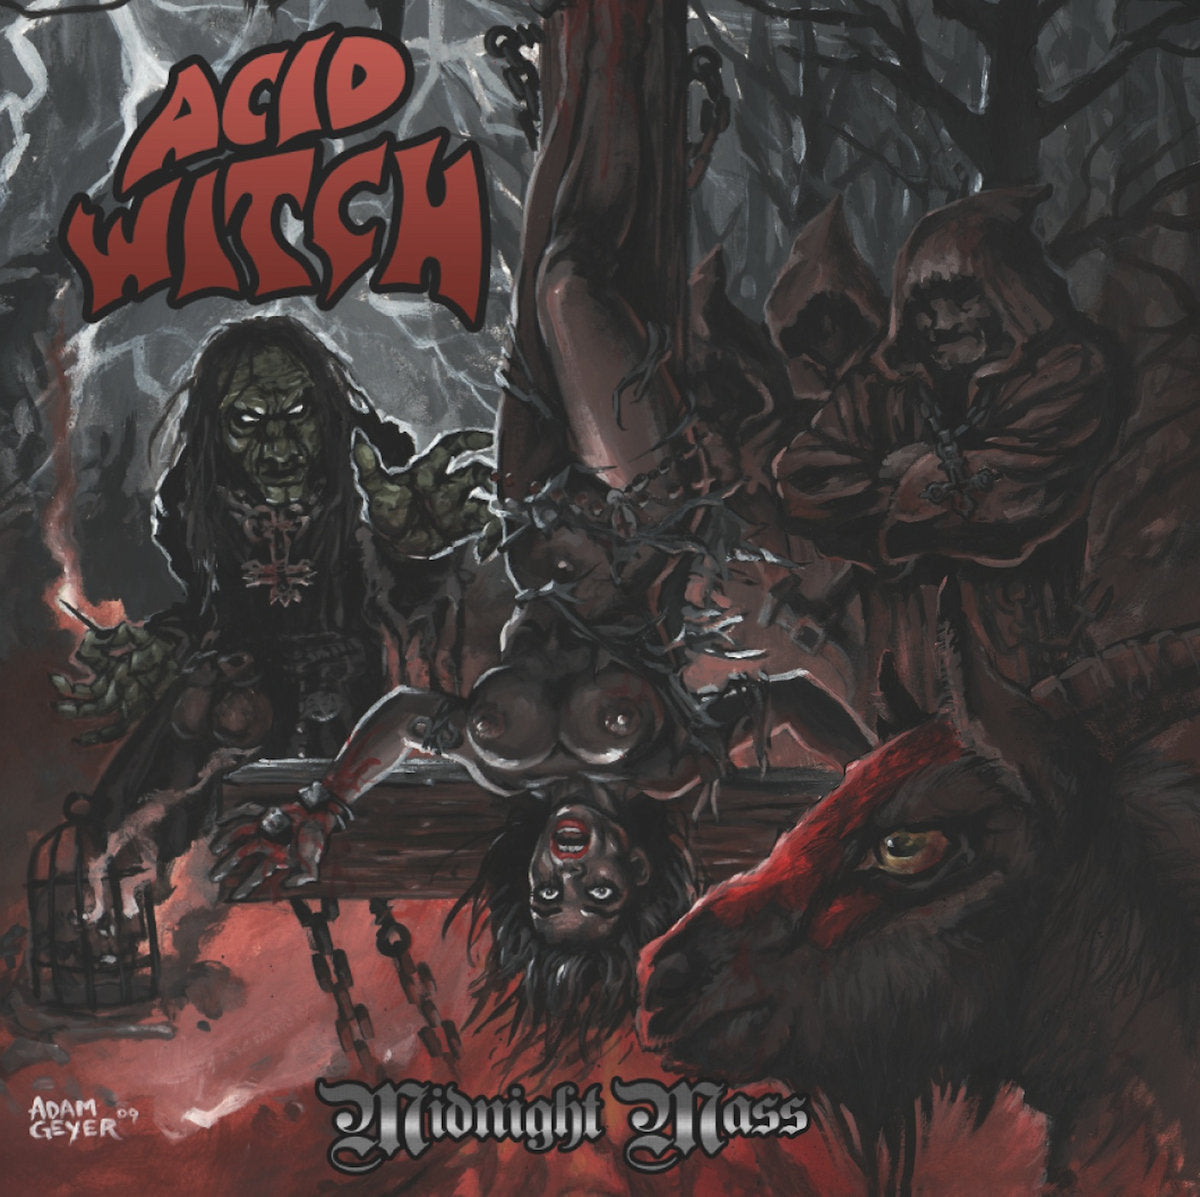 ACID WITCH – Midnight Mass 7" (halloween orange/black splatter vinyl)